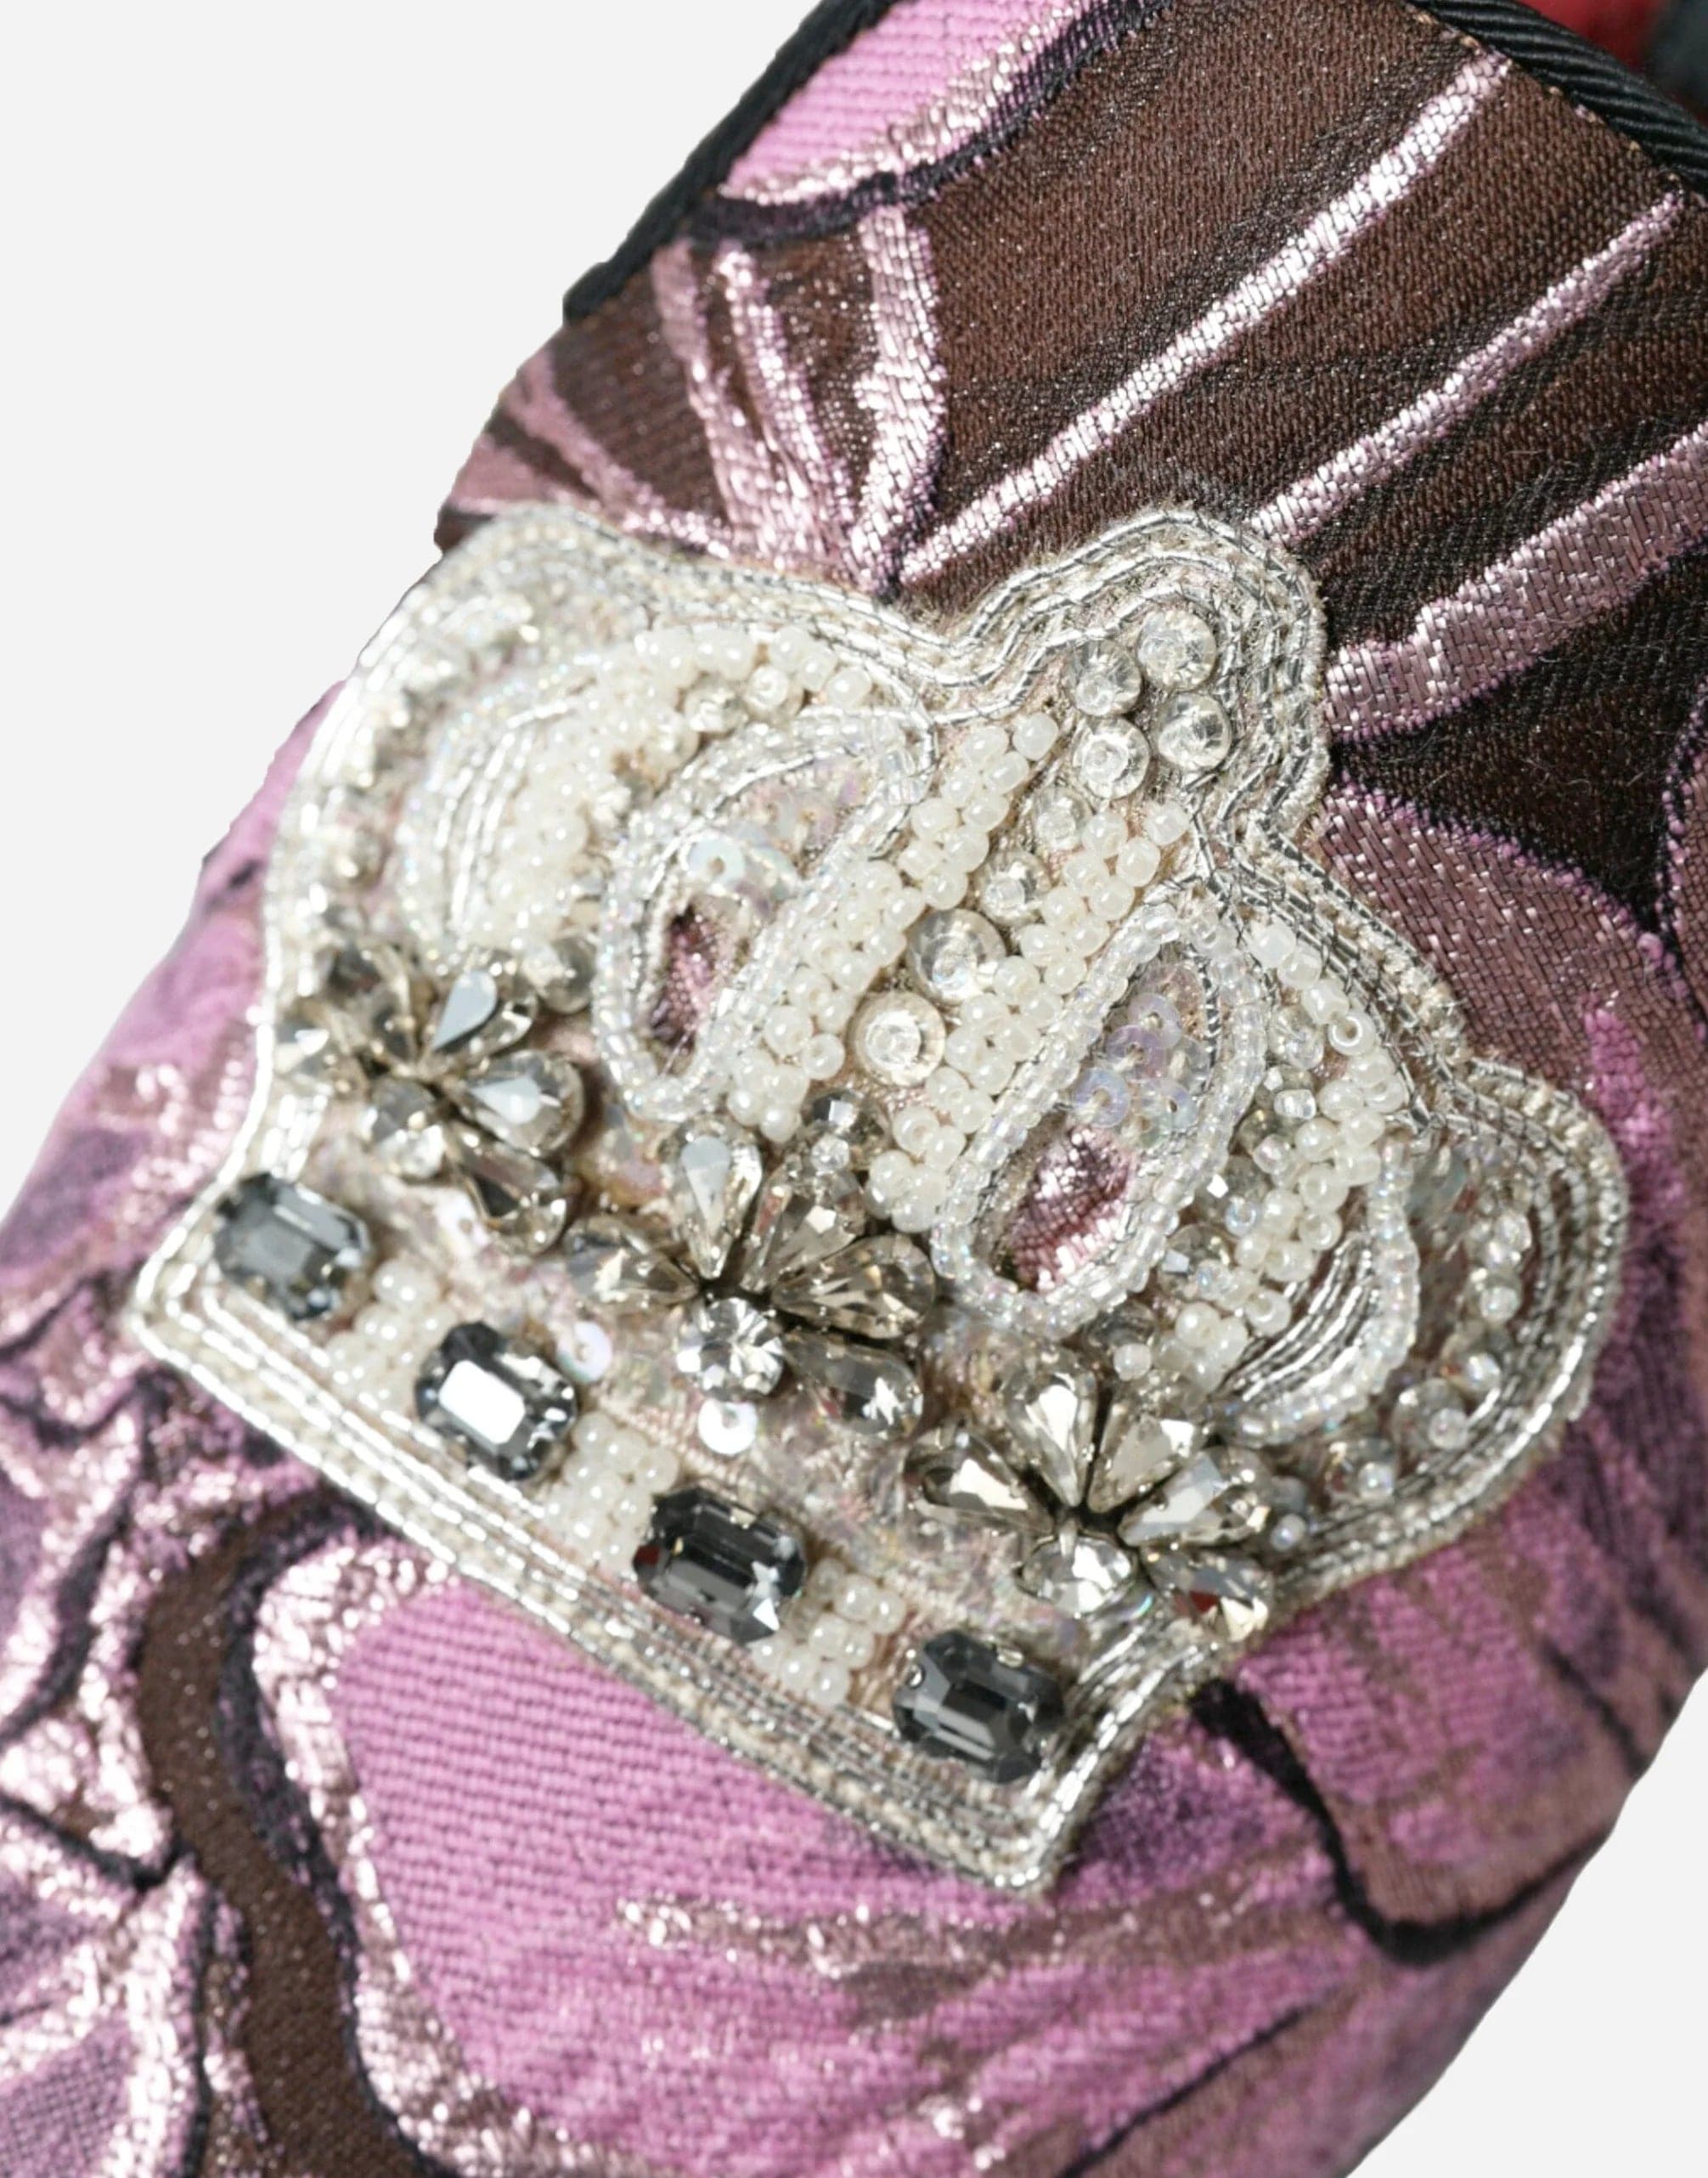 Royal Crown Crystal Embellished Loafers